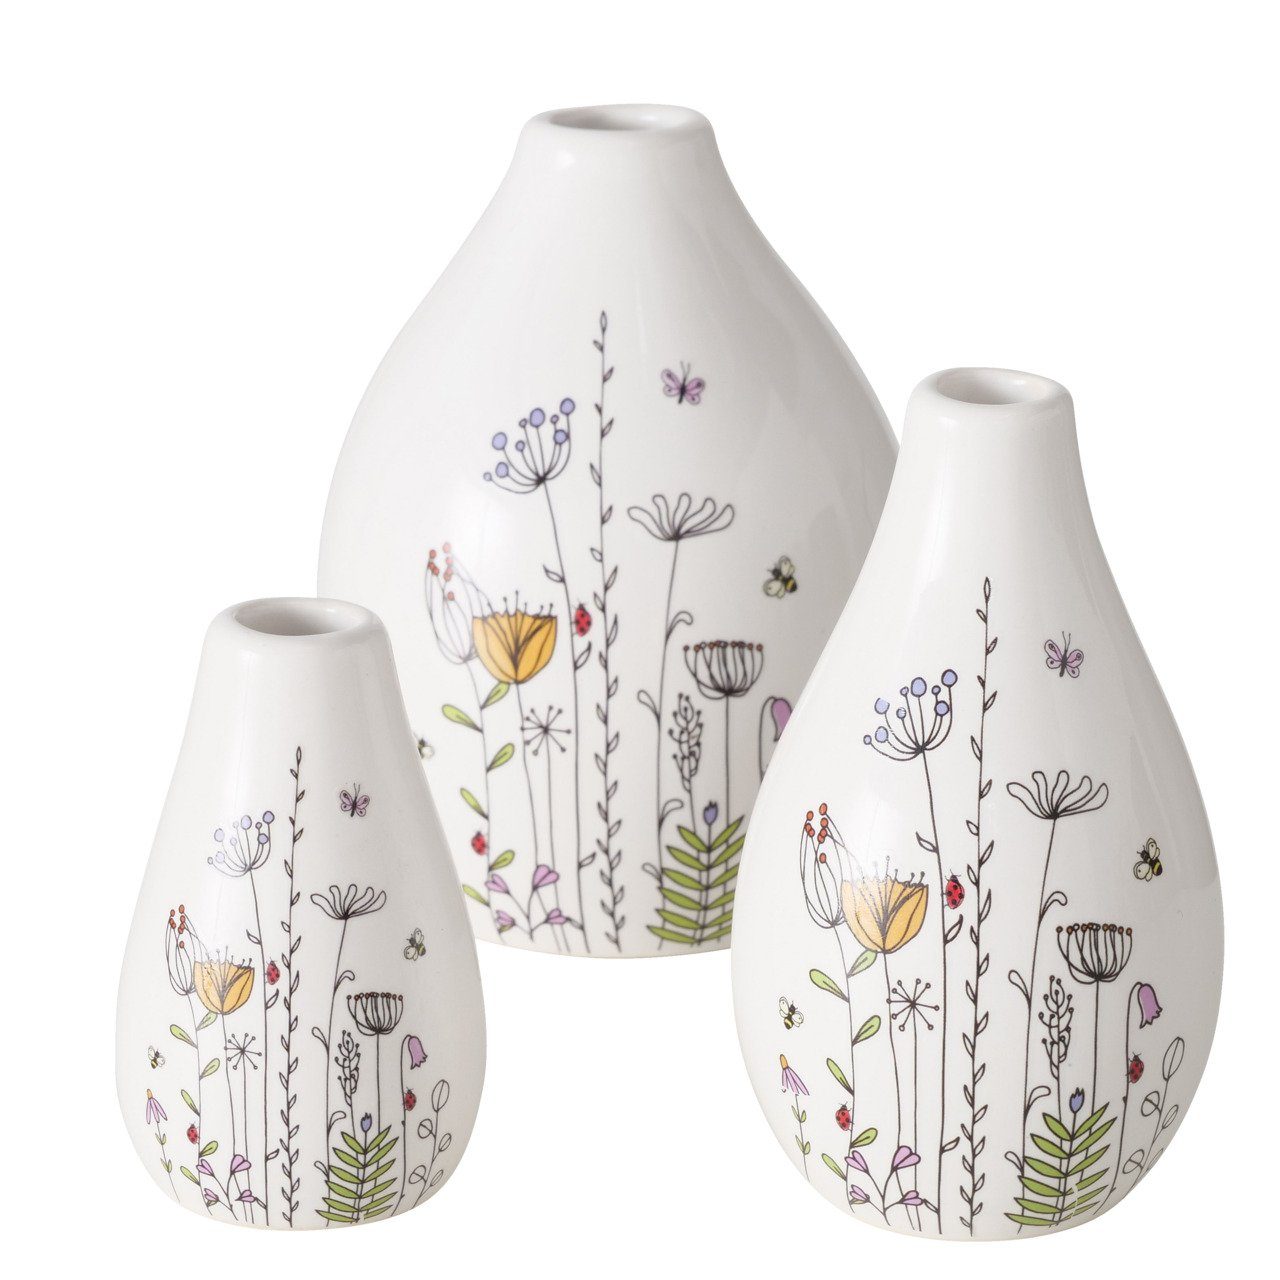 BOLTZE Tischvase Set Kamilla 3-teilig (Vase mit Blumenmuster, Dekoration)